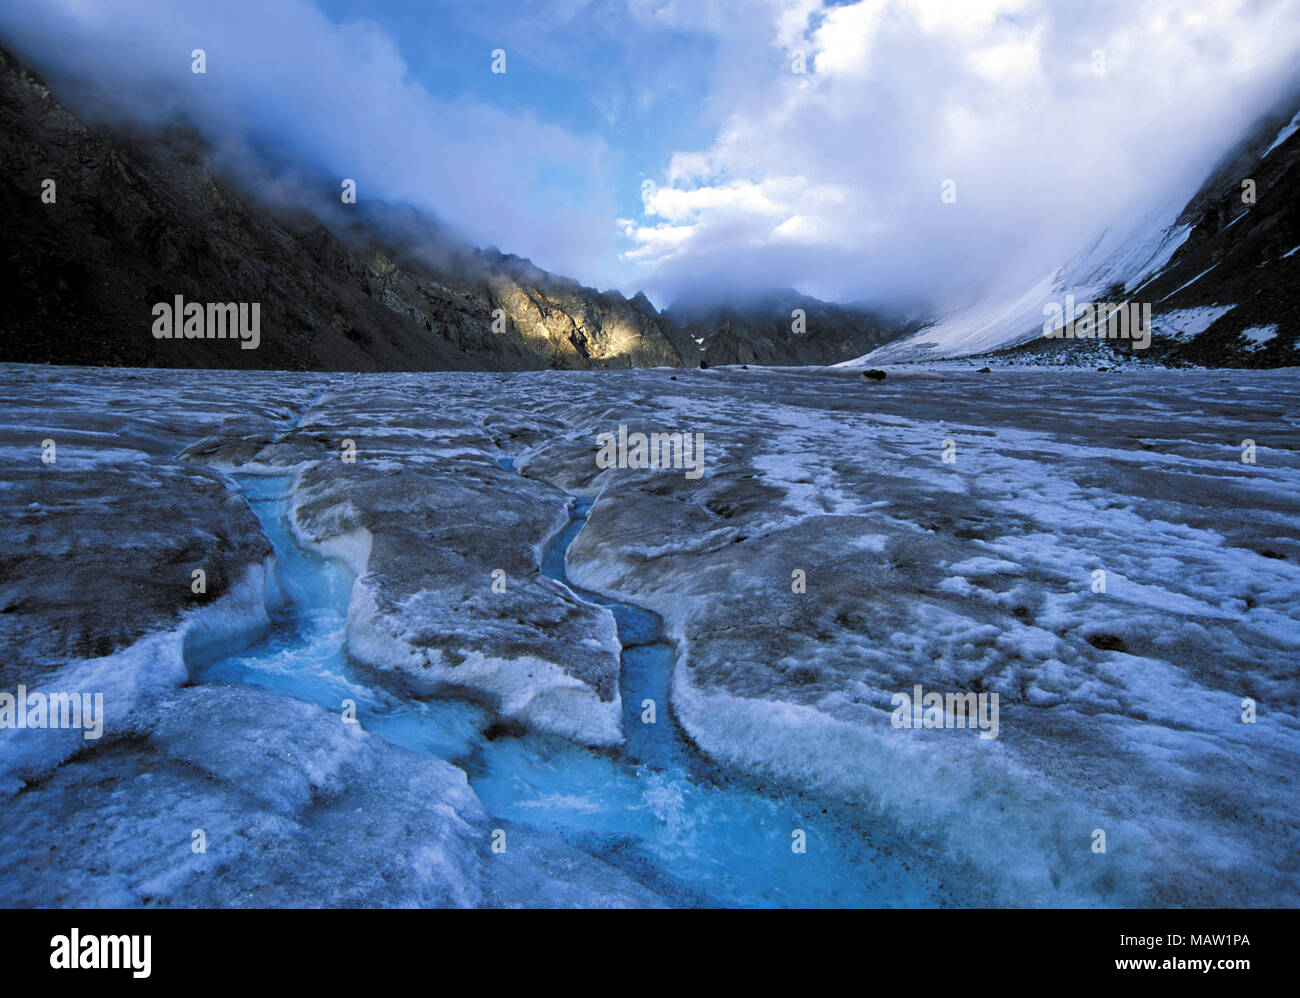 Schmelzwasser Rinne in Eis, Gletscher, Arbuz Altai Gebirge, Russland Stockfoto